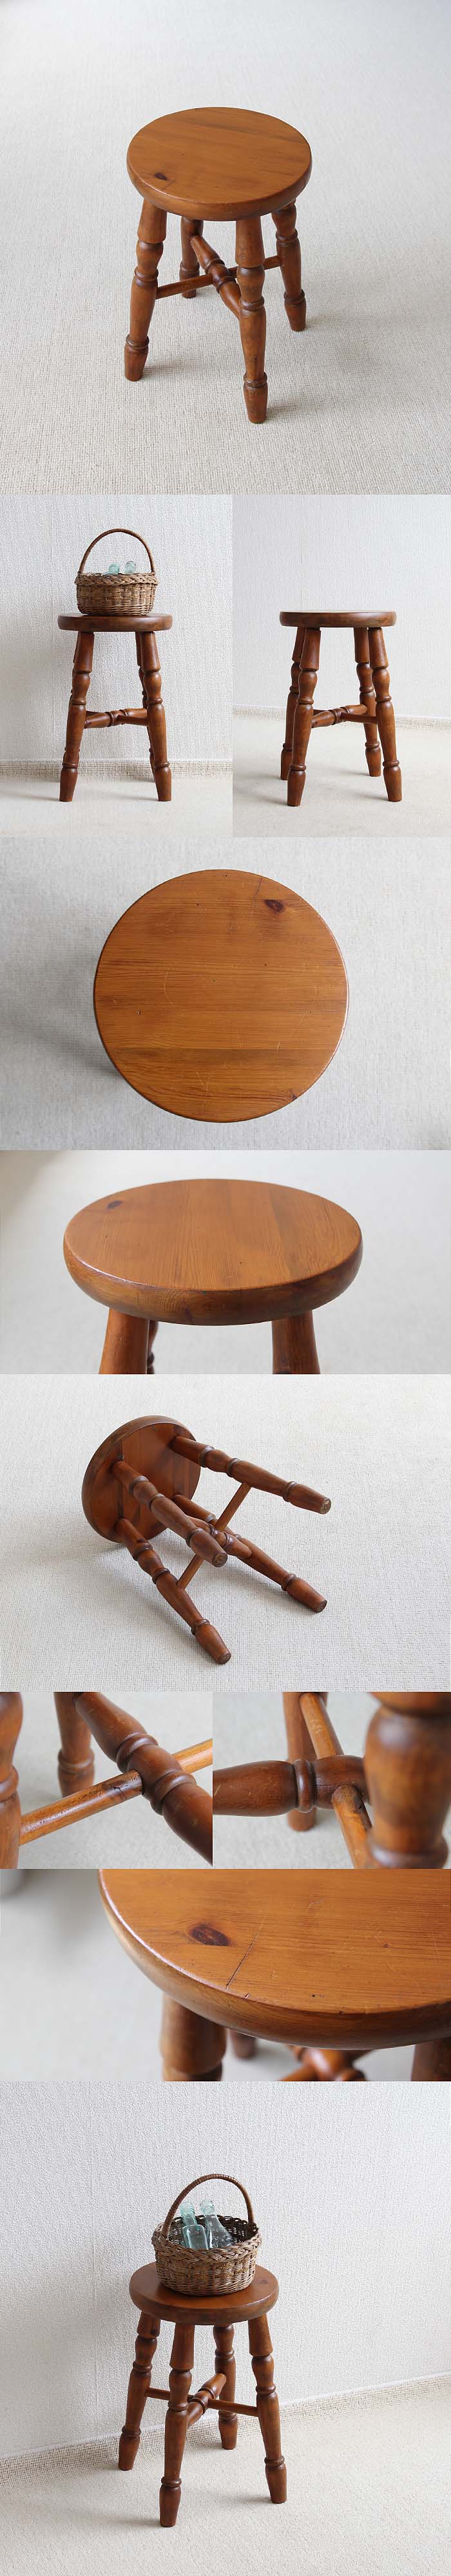 イギリス アンティーク オールドパインスツール 木製 椅子 飾り台 カントリー 家具 V-310